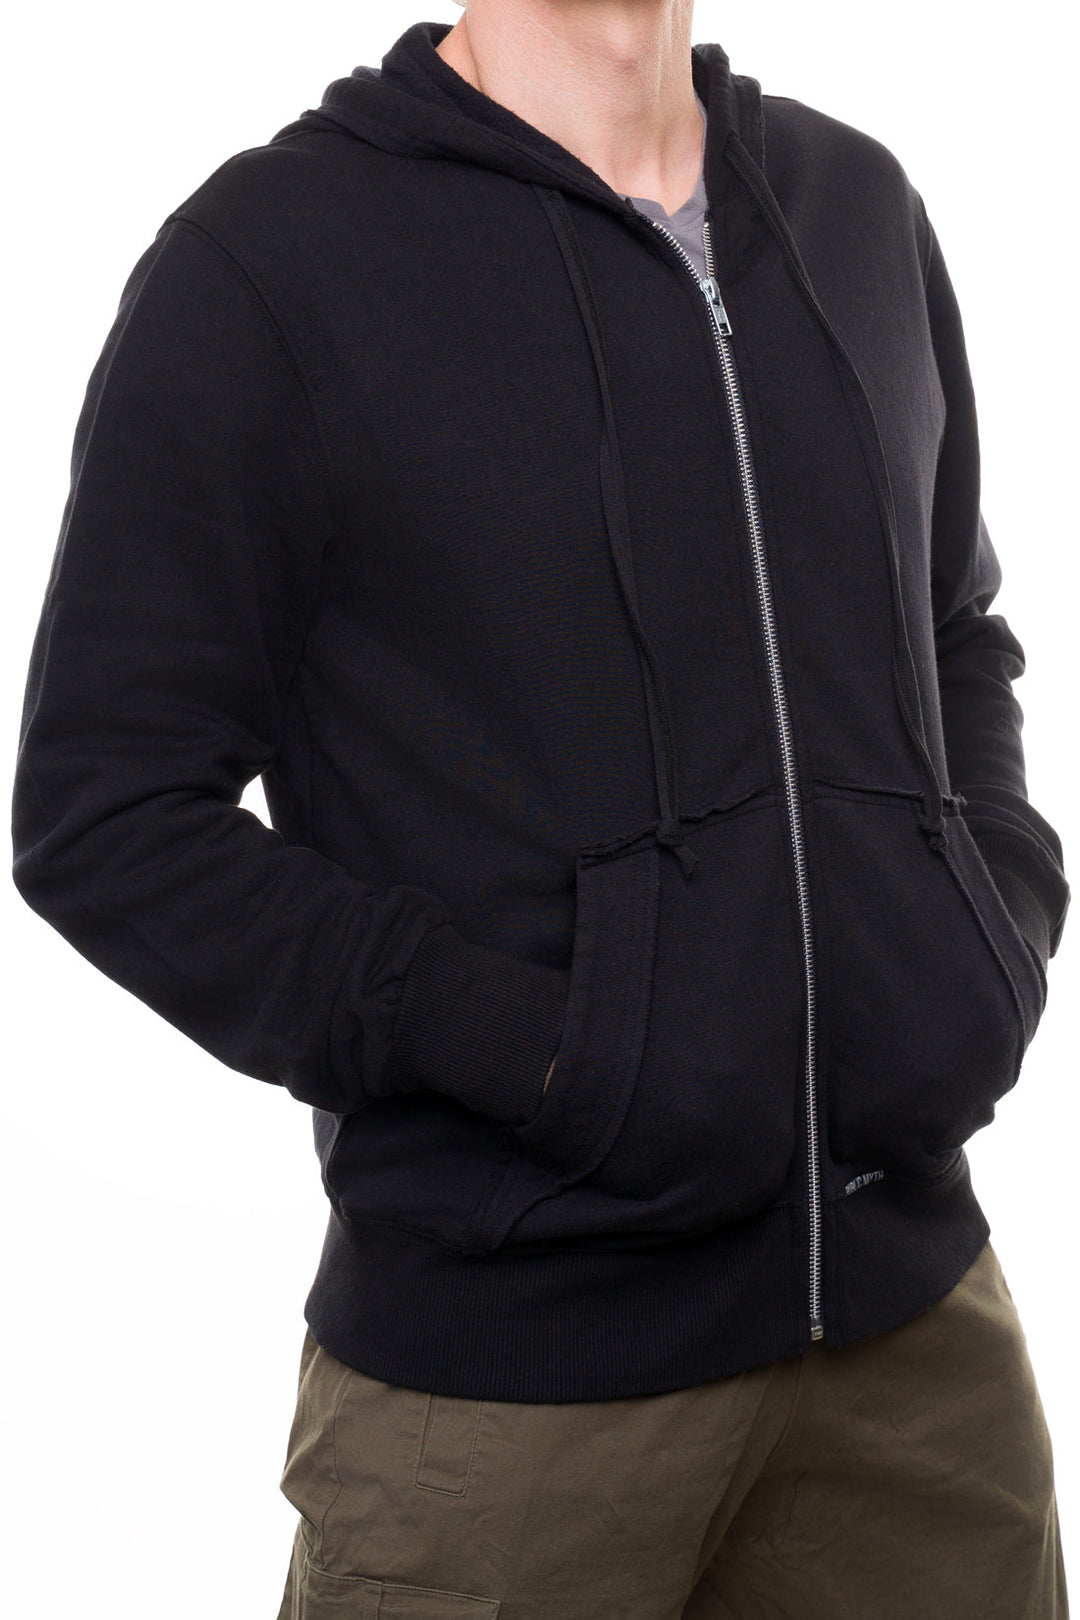 Men's black zip up hoodie